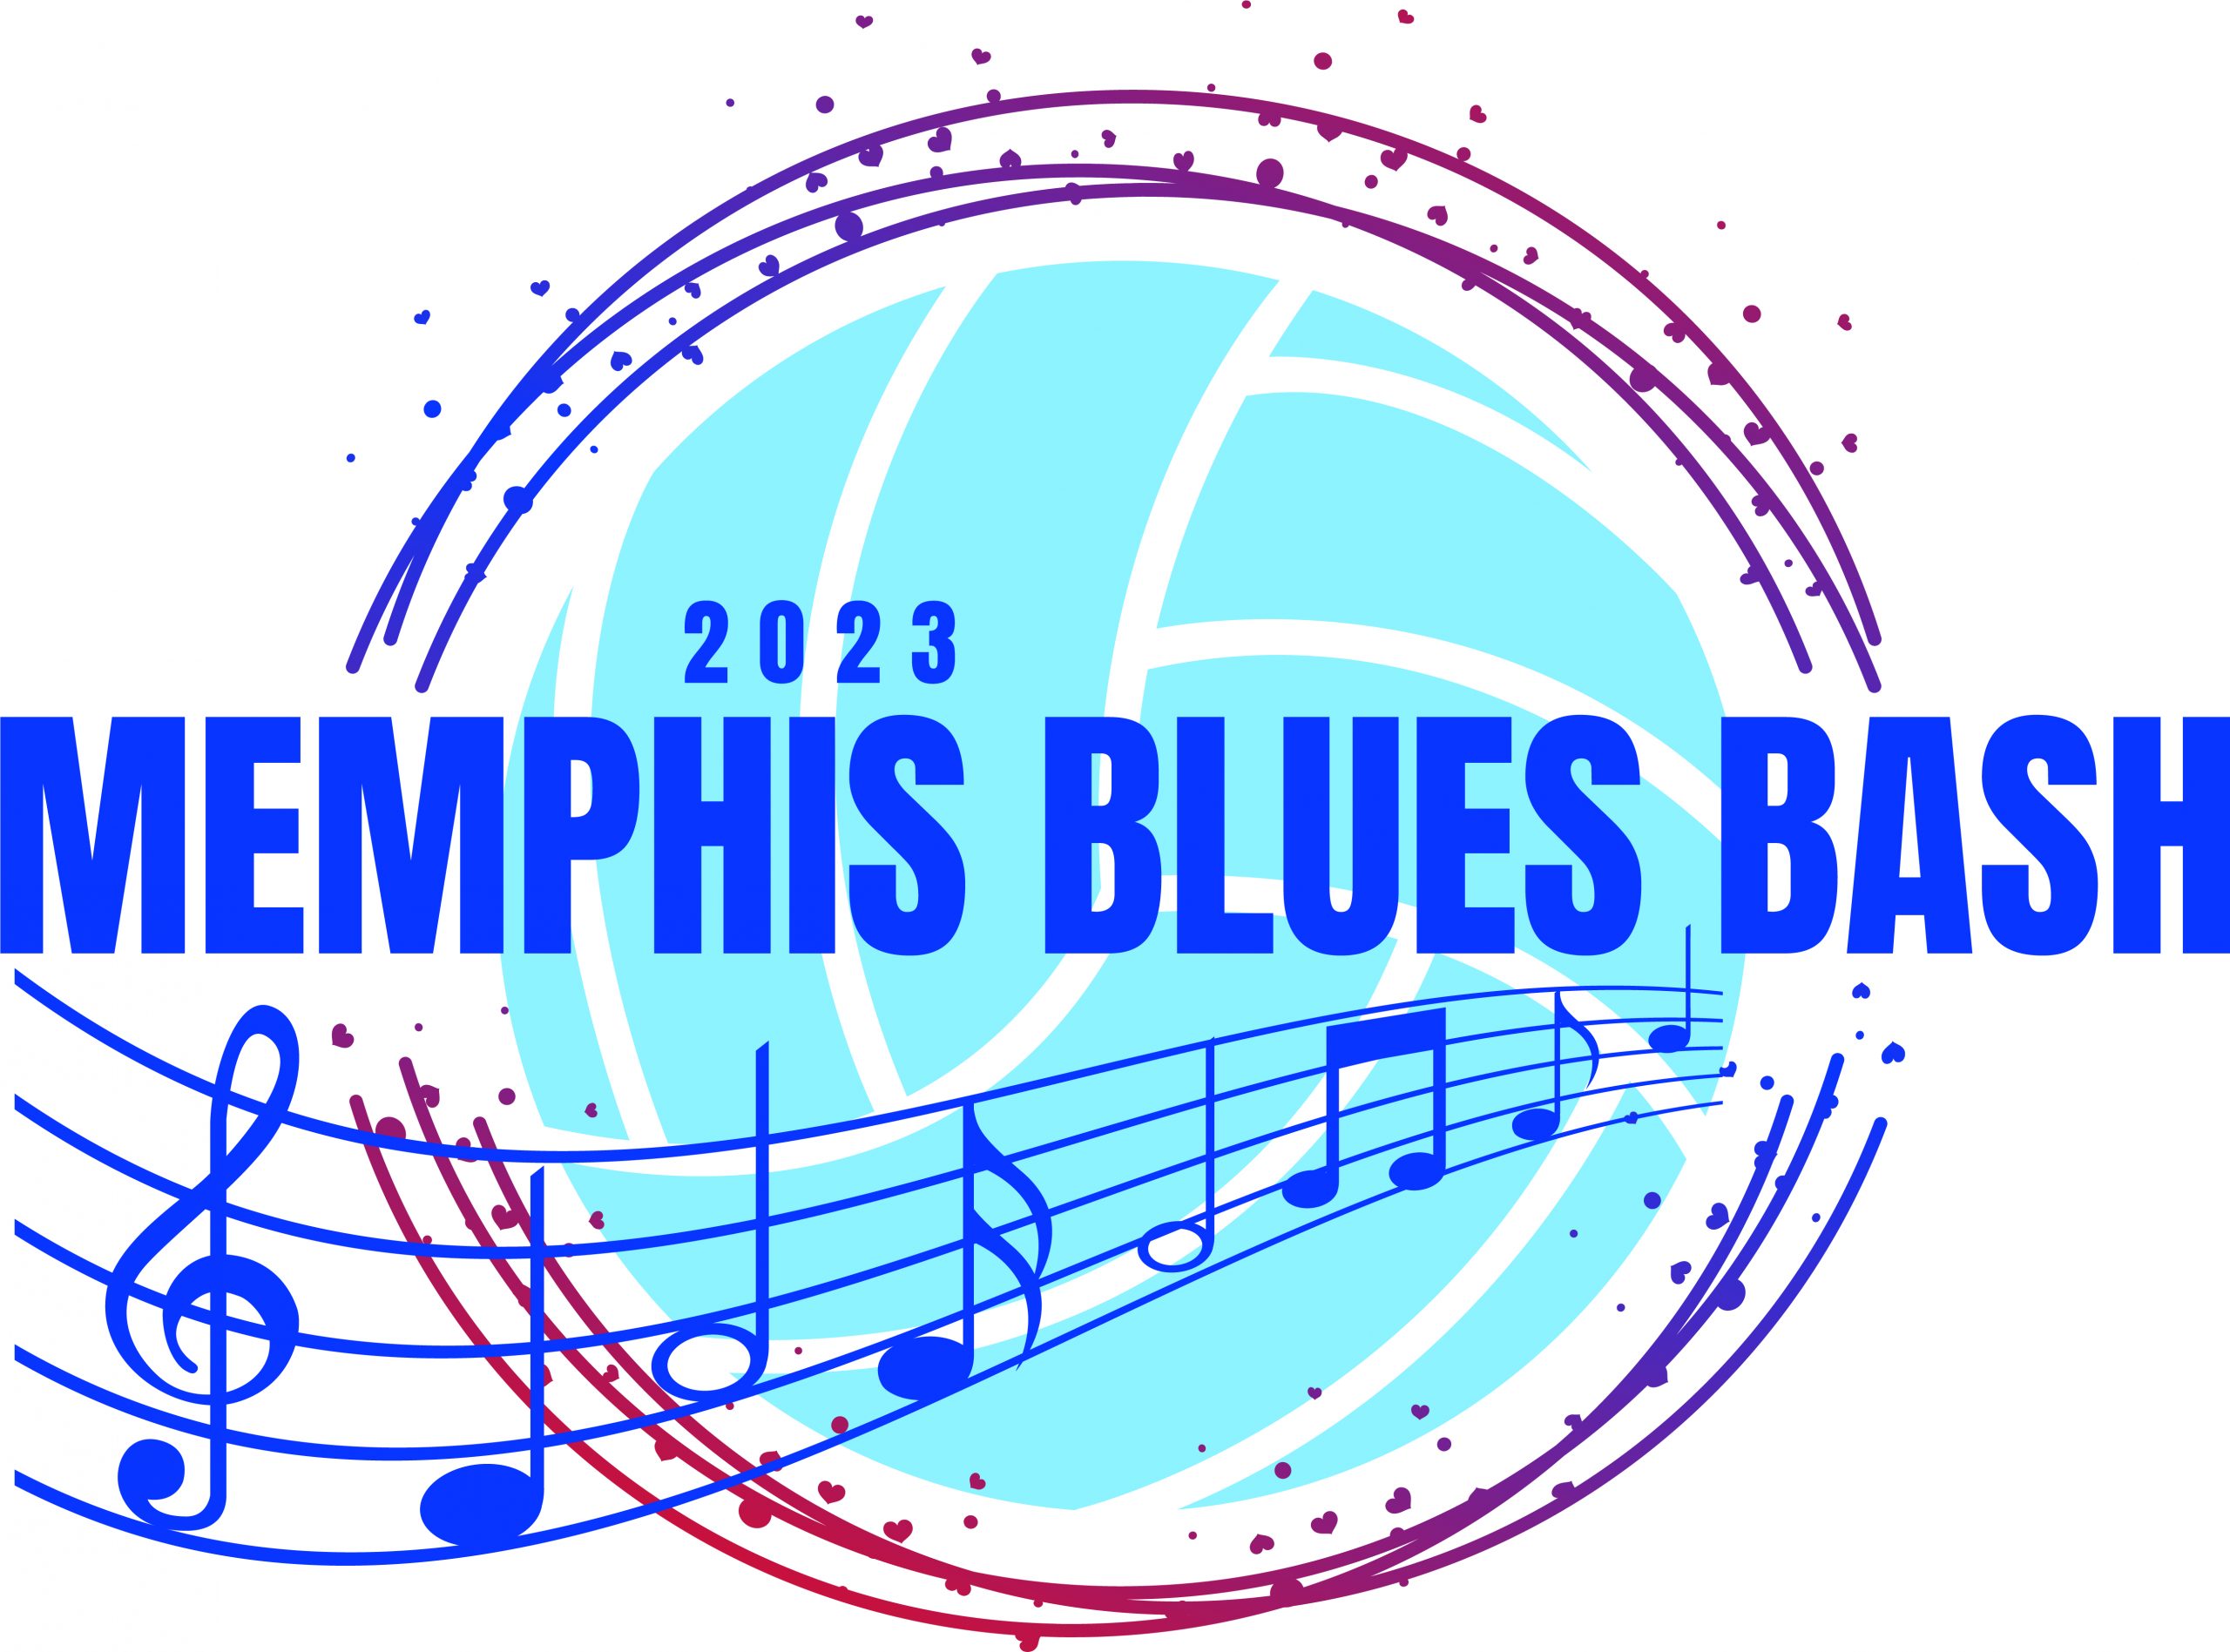 MemphisBluesBash_outlines